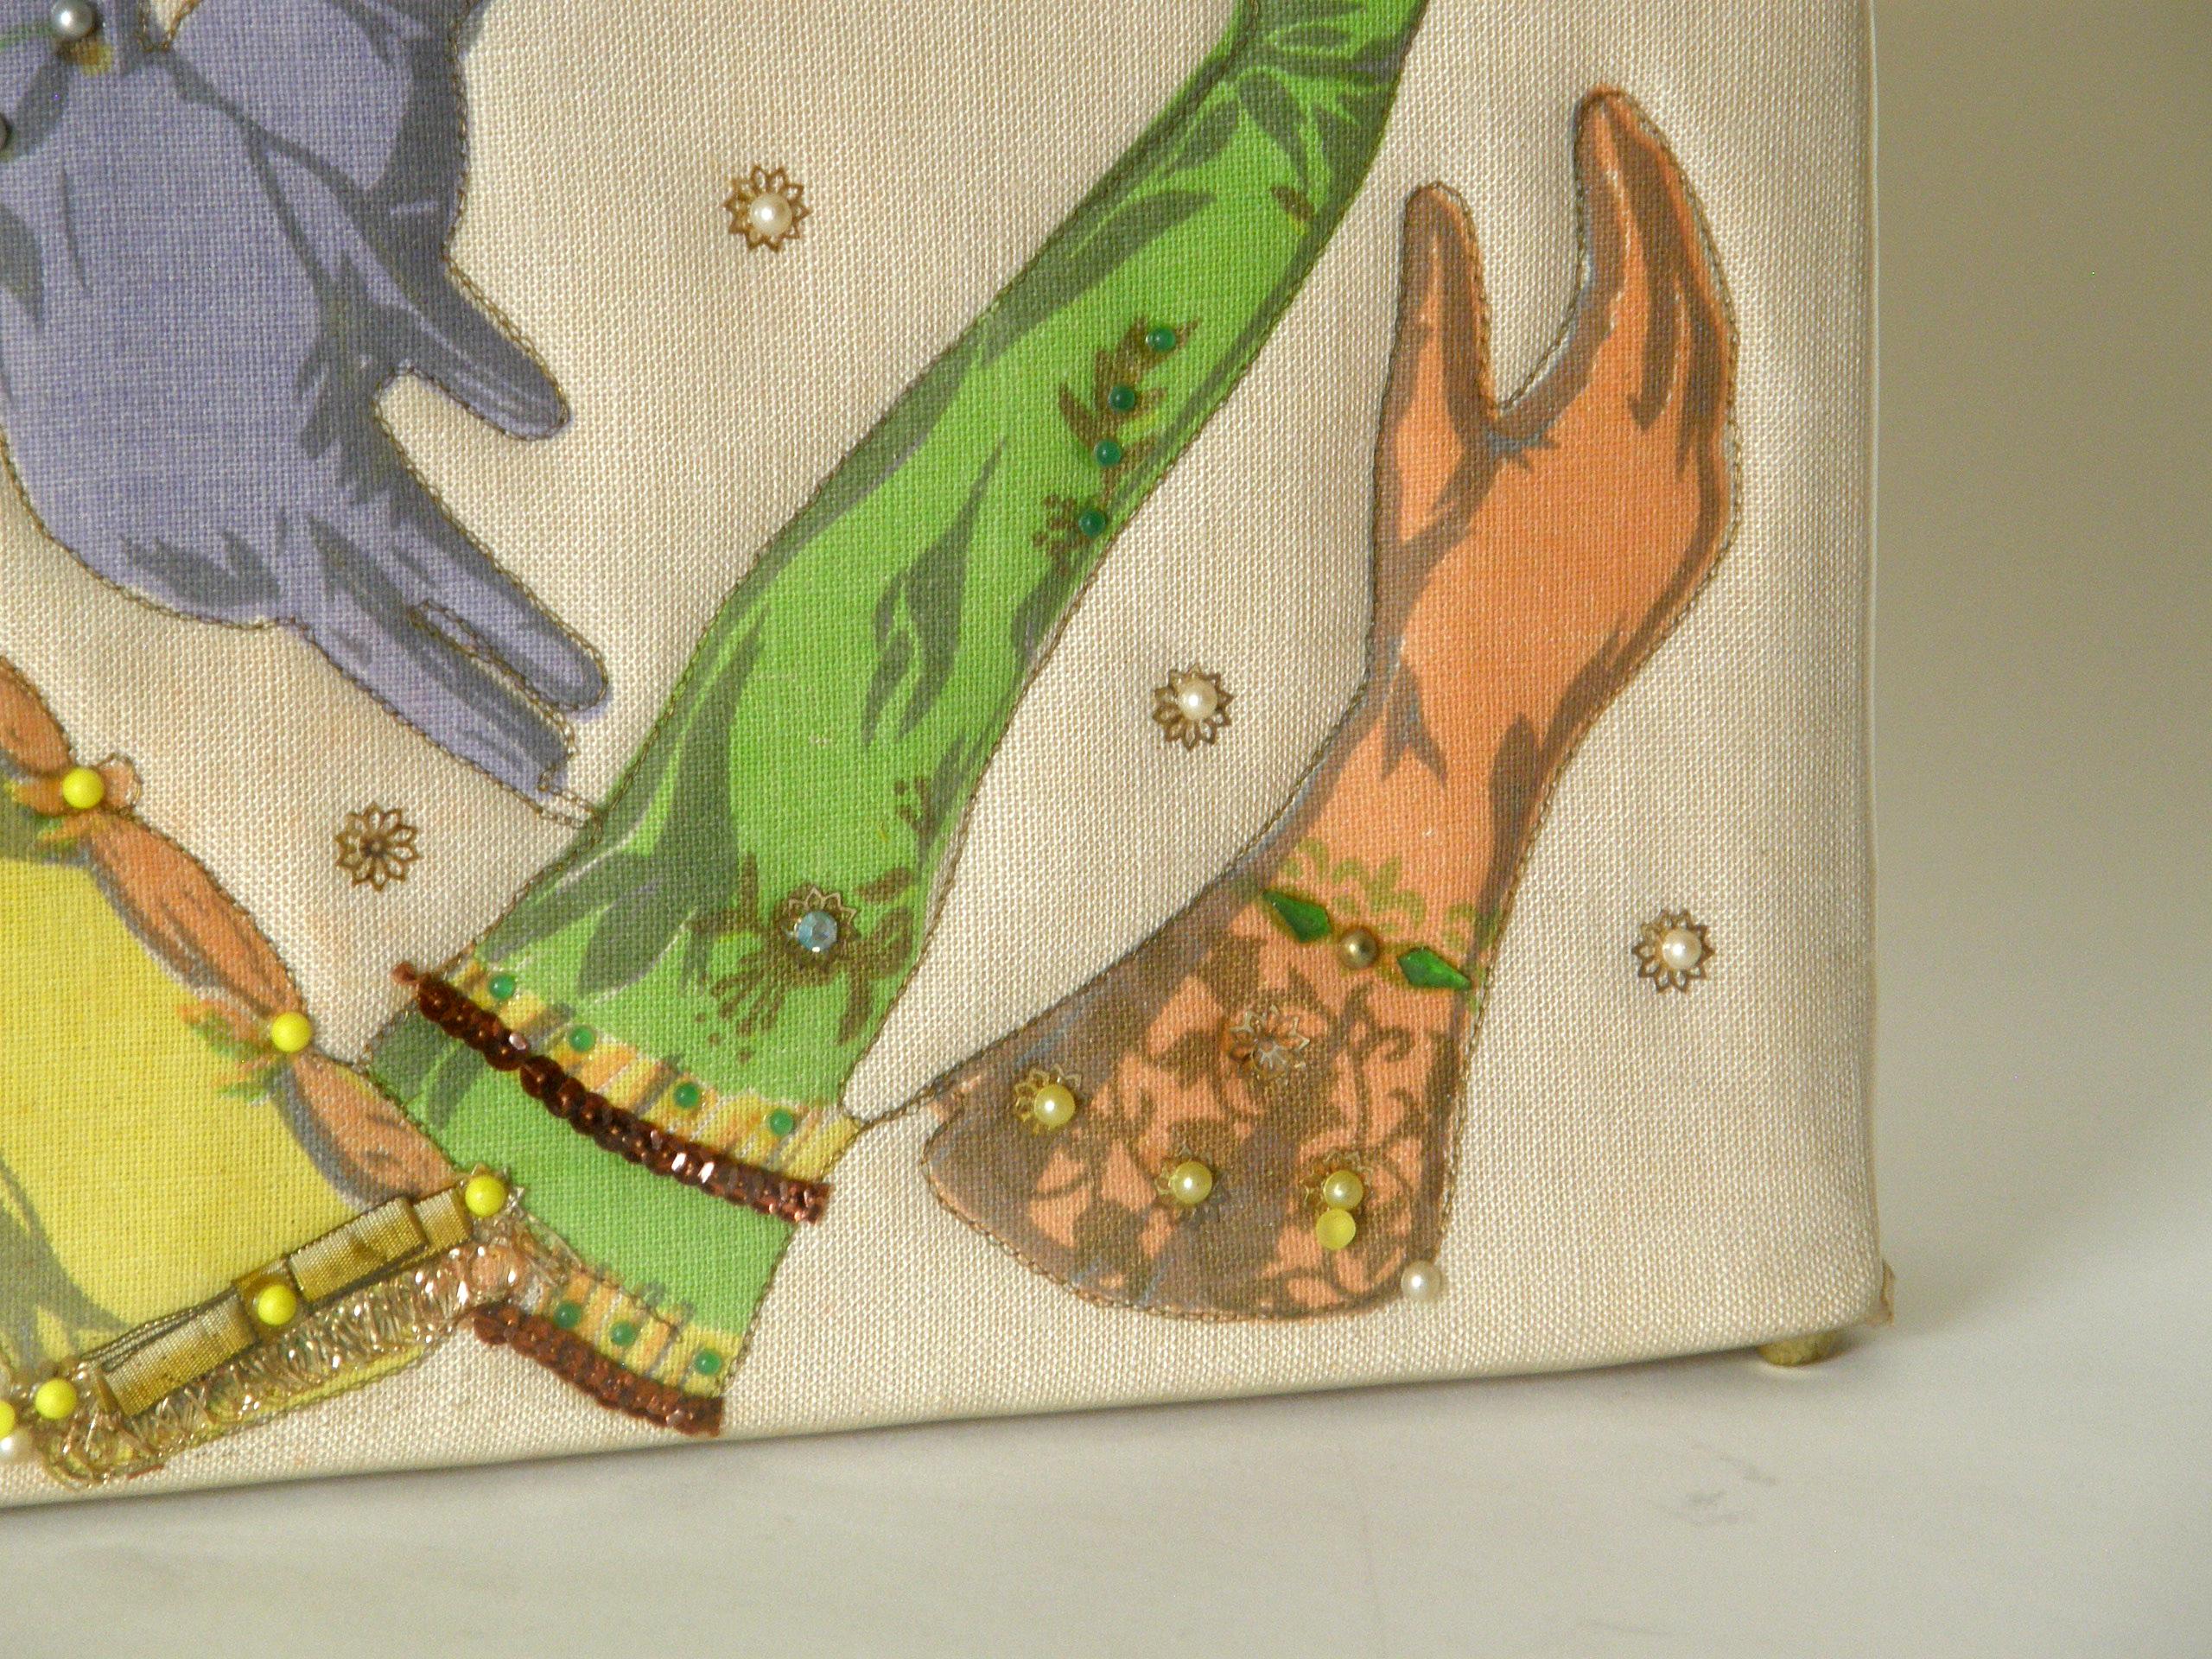 Women's or Men's Gloves Theme Handbag by Soure' 